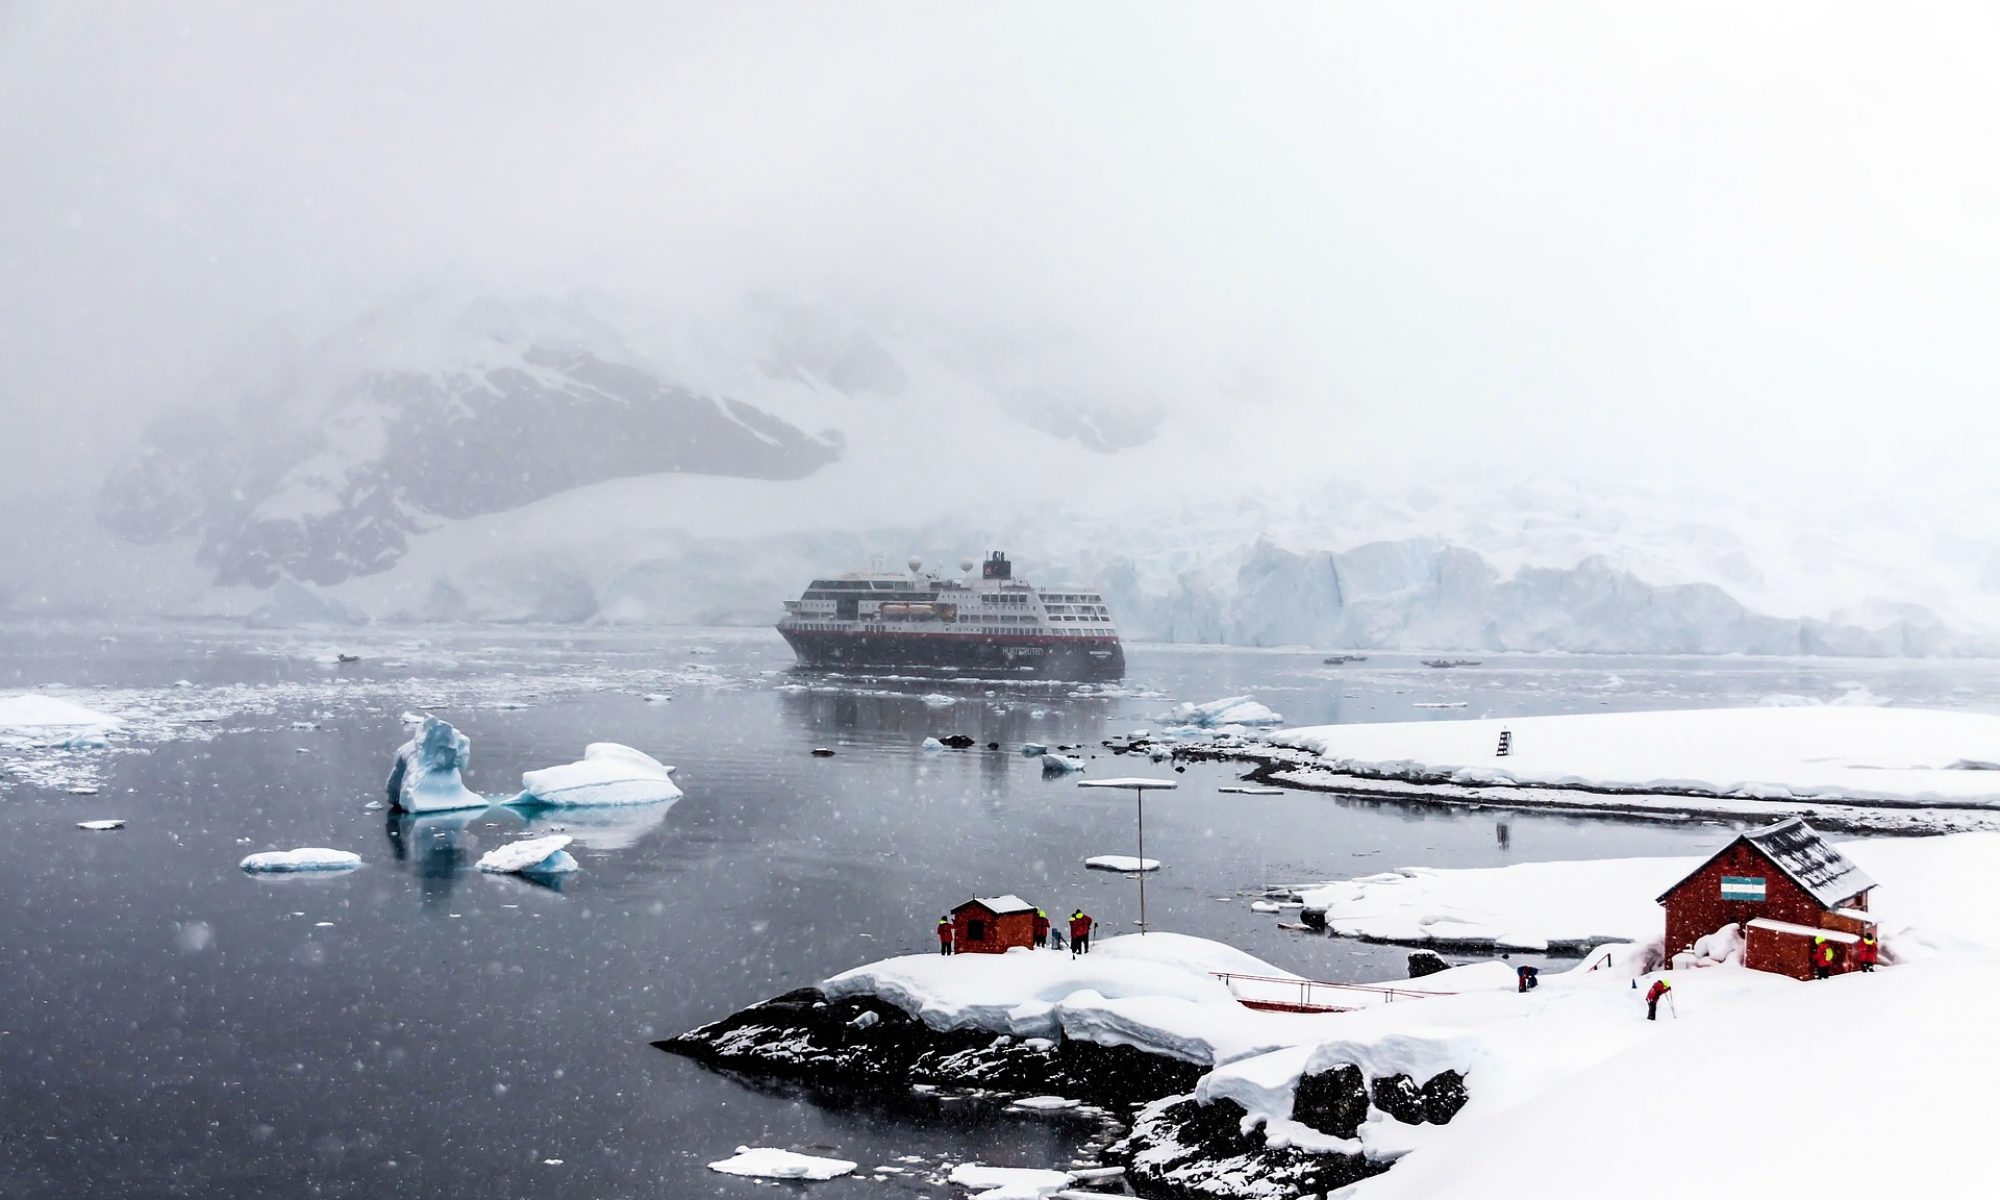 Polar cruise ship